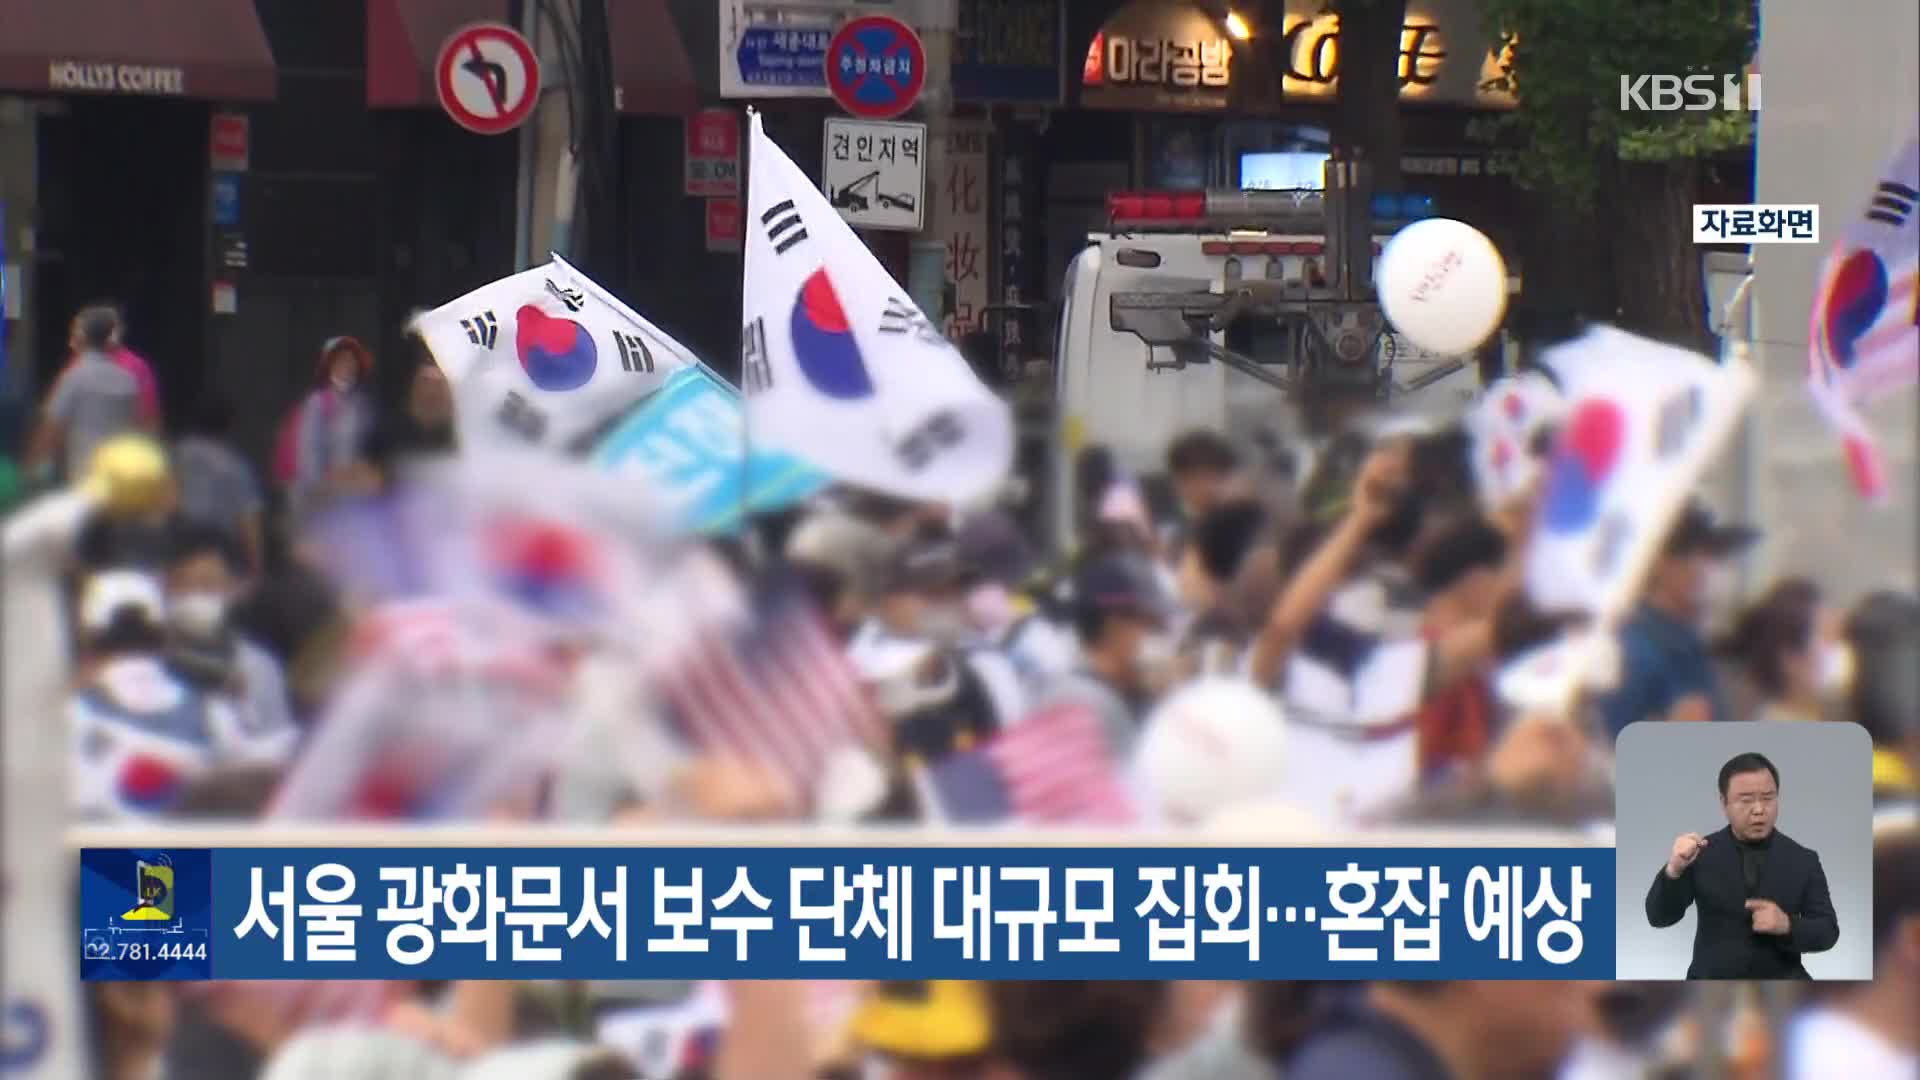 서울 광화문서 보수 단체 대규모 집회…혼잡 예상